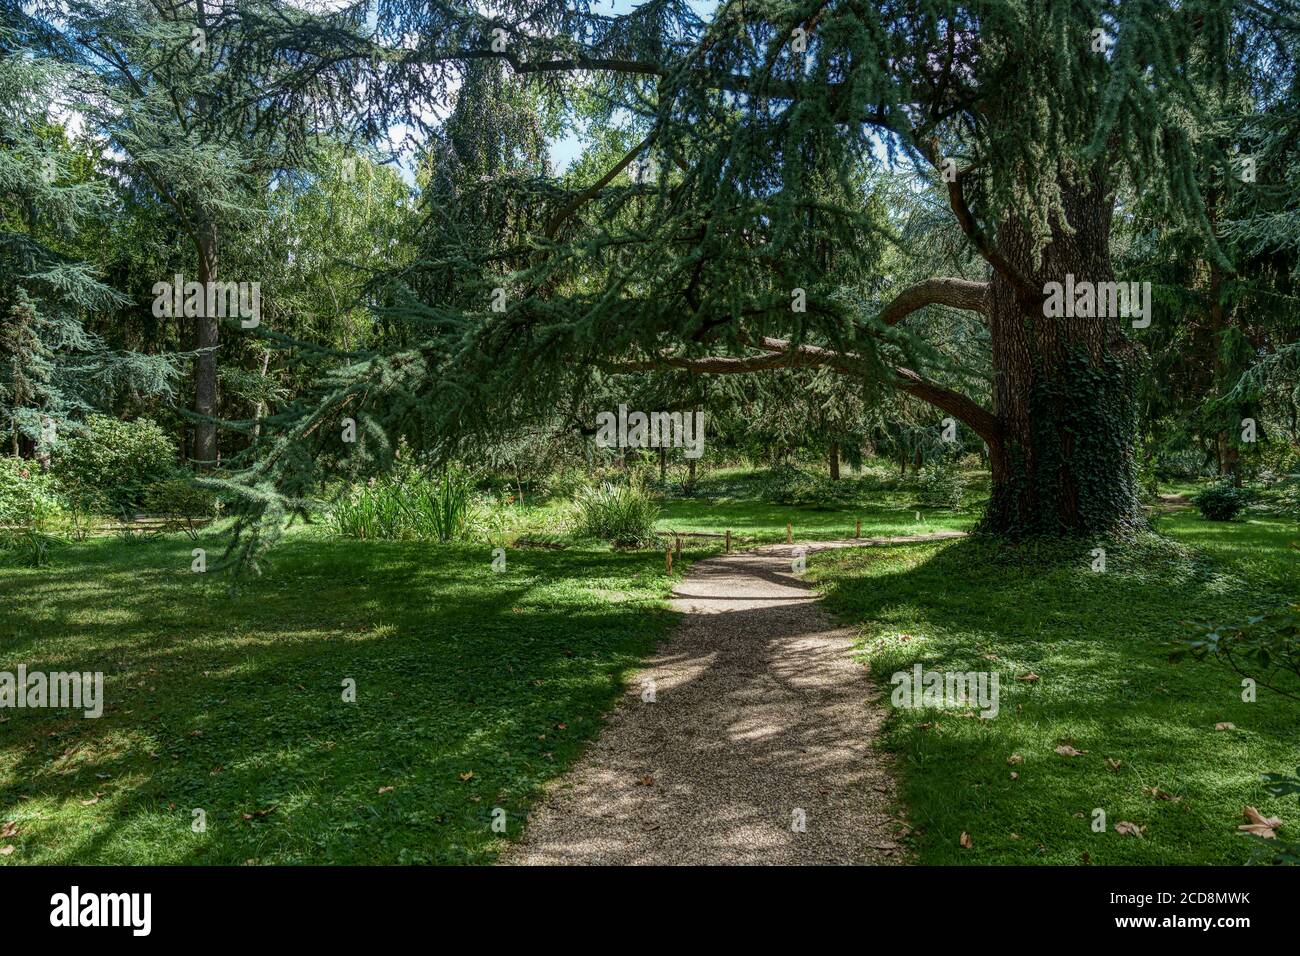 Großer Baum im Sumpfteil des Albert Kahn Parks - Boulogne-Billancourt - Frankreich Stockfoto